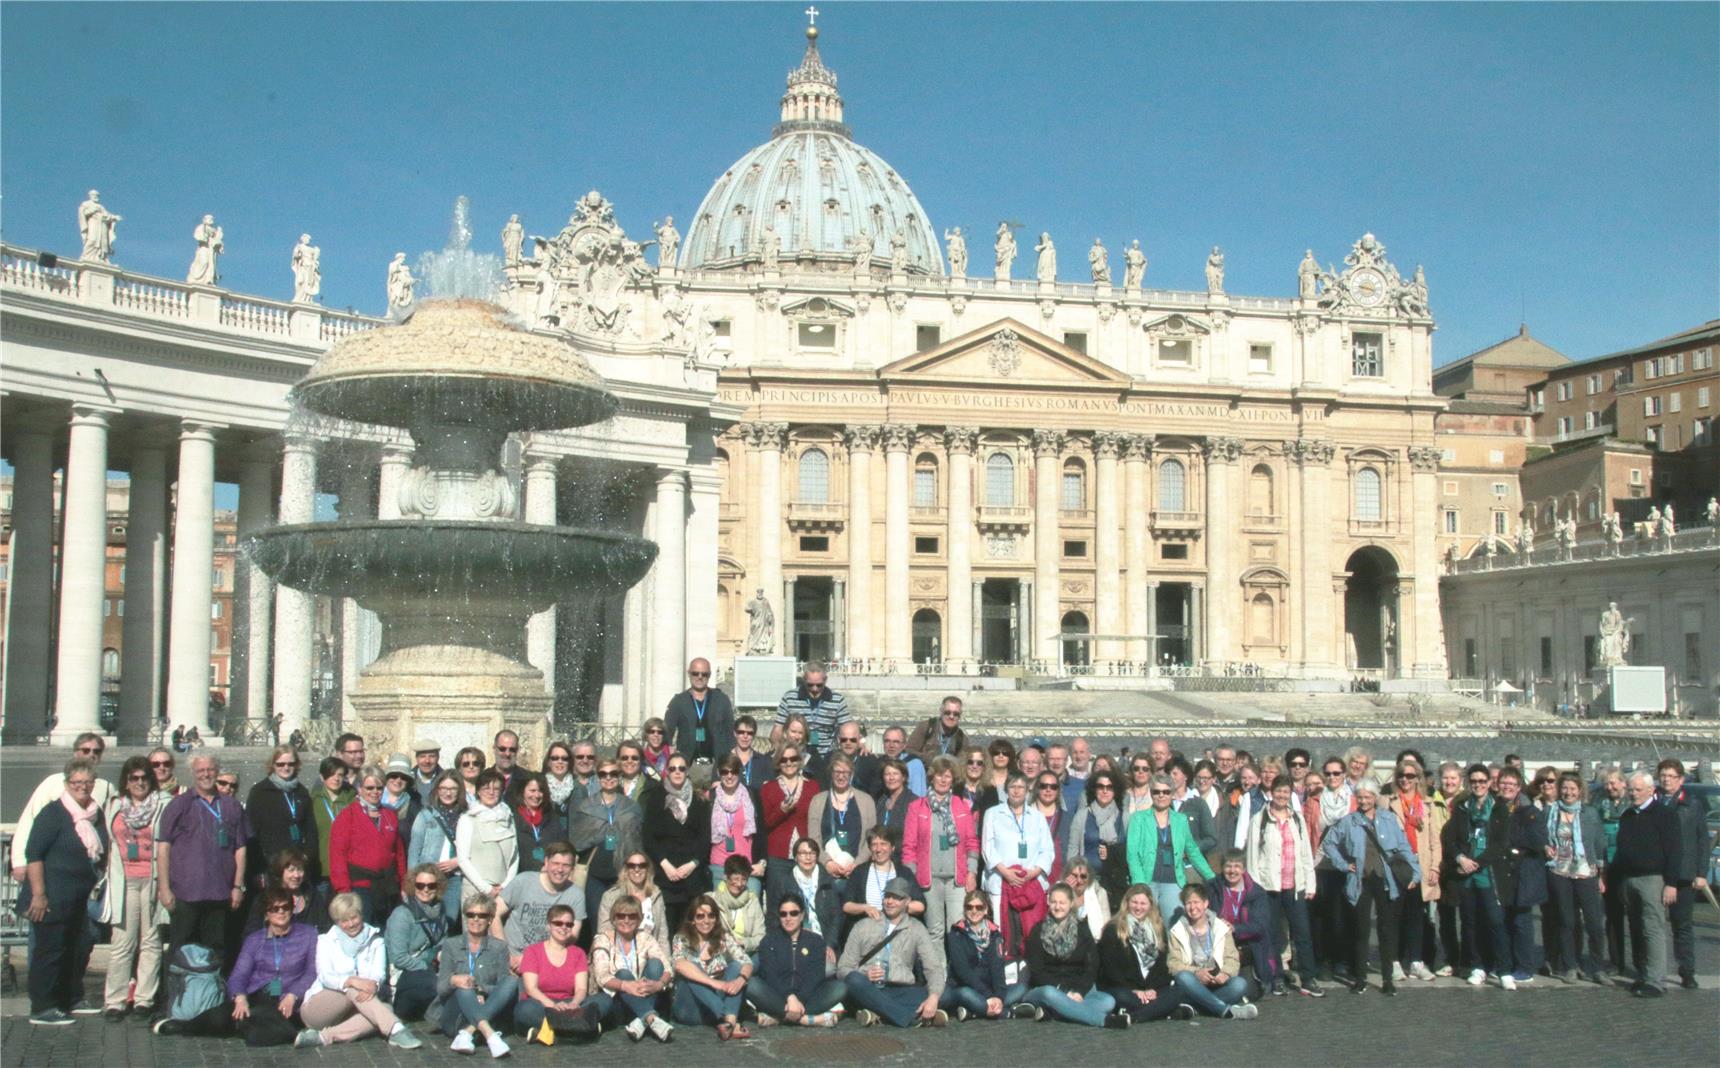 Das Foto zeigt eine große Gruppe mit dem Petersdom im Hintergrund.